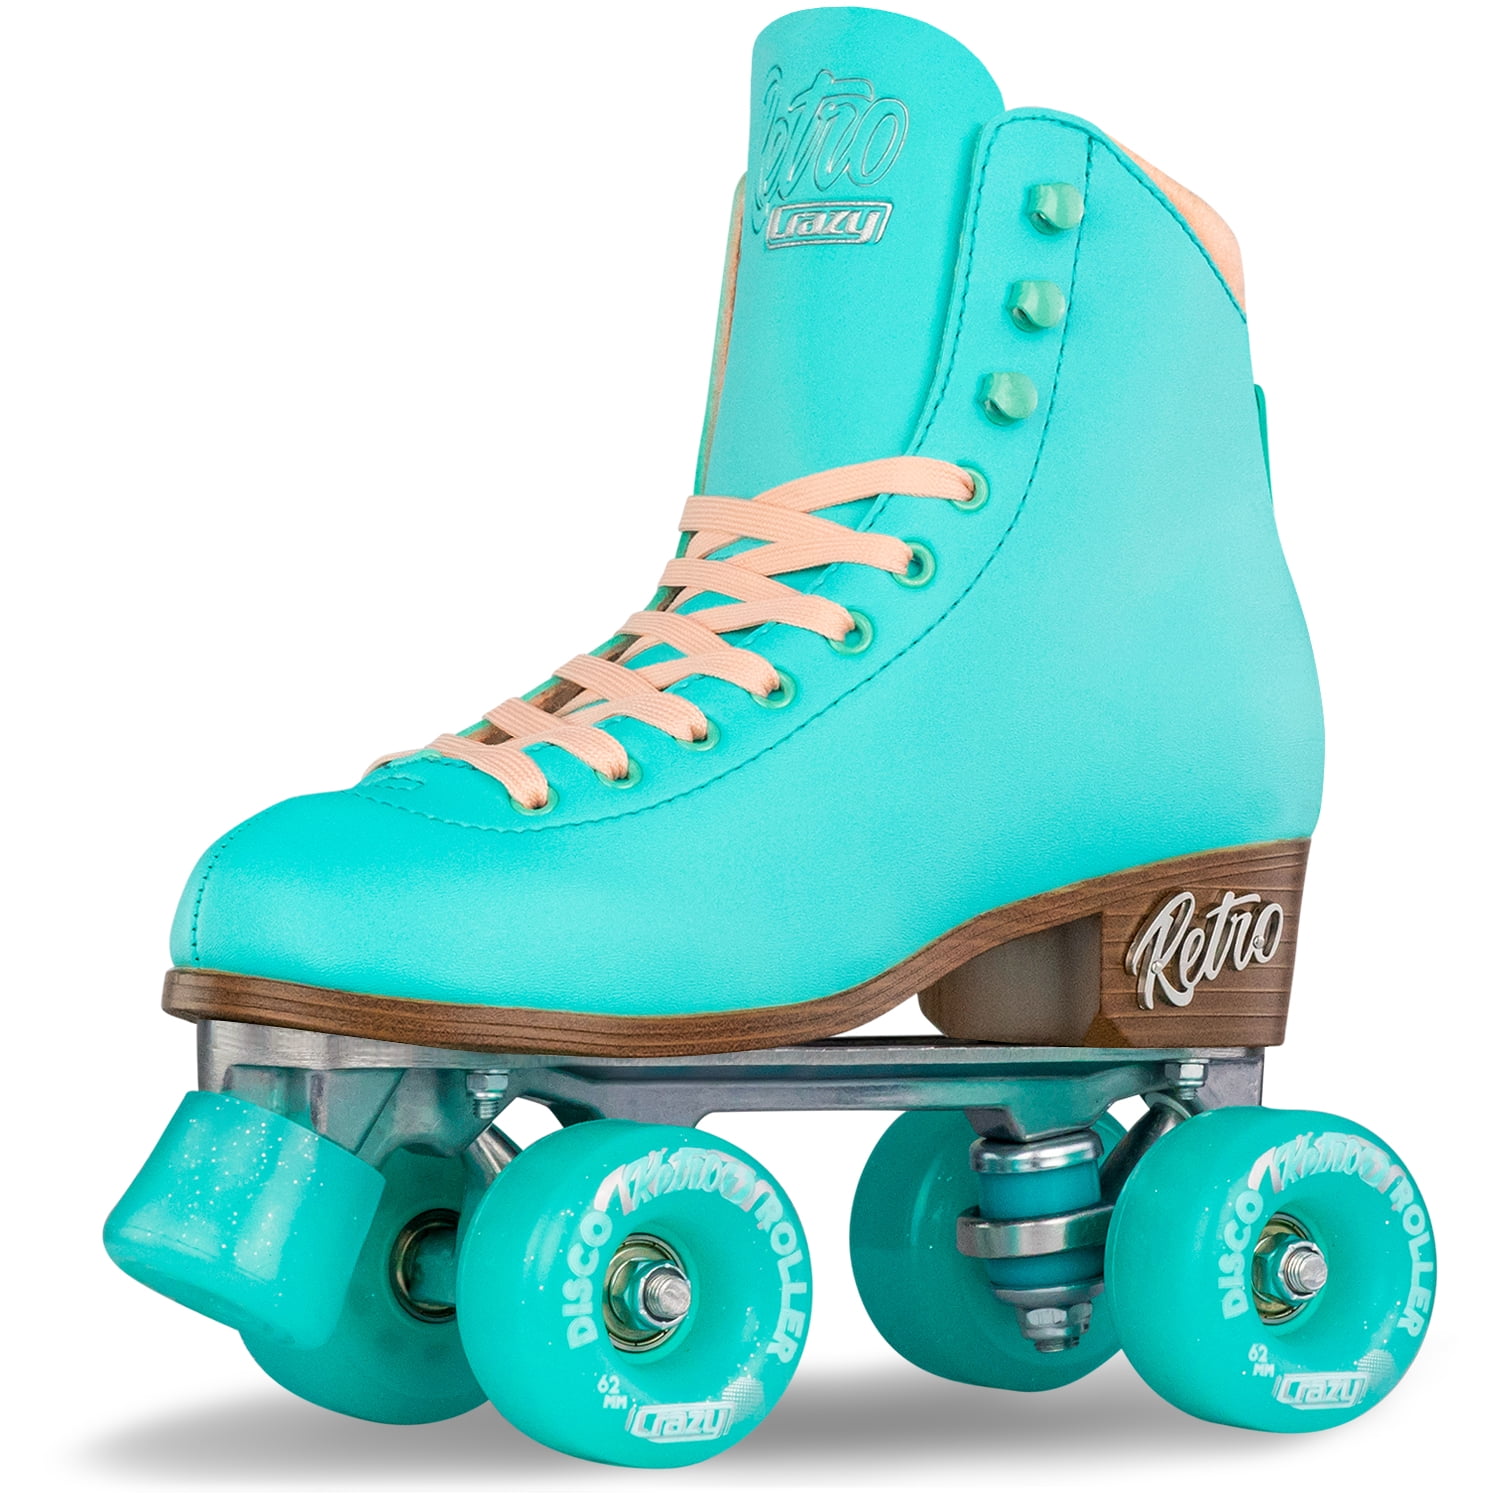 Crazy Skates RETRO RollerQuad Rollerskates Size Adjustable for Girls Ladies 